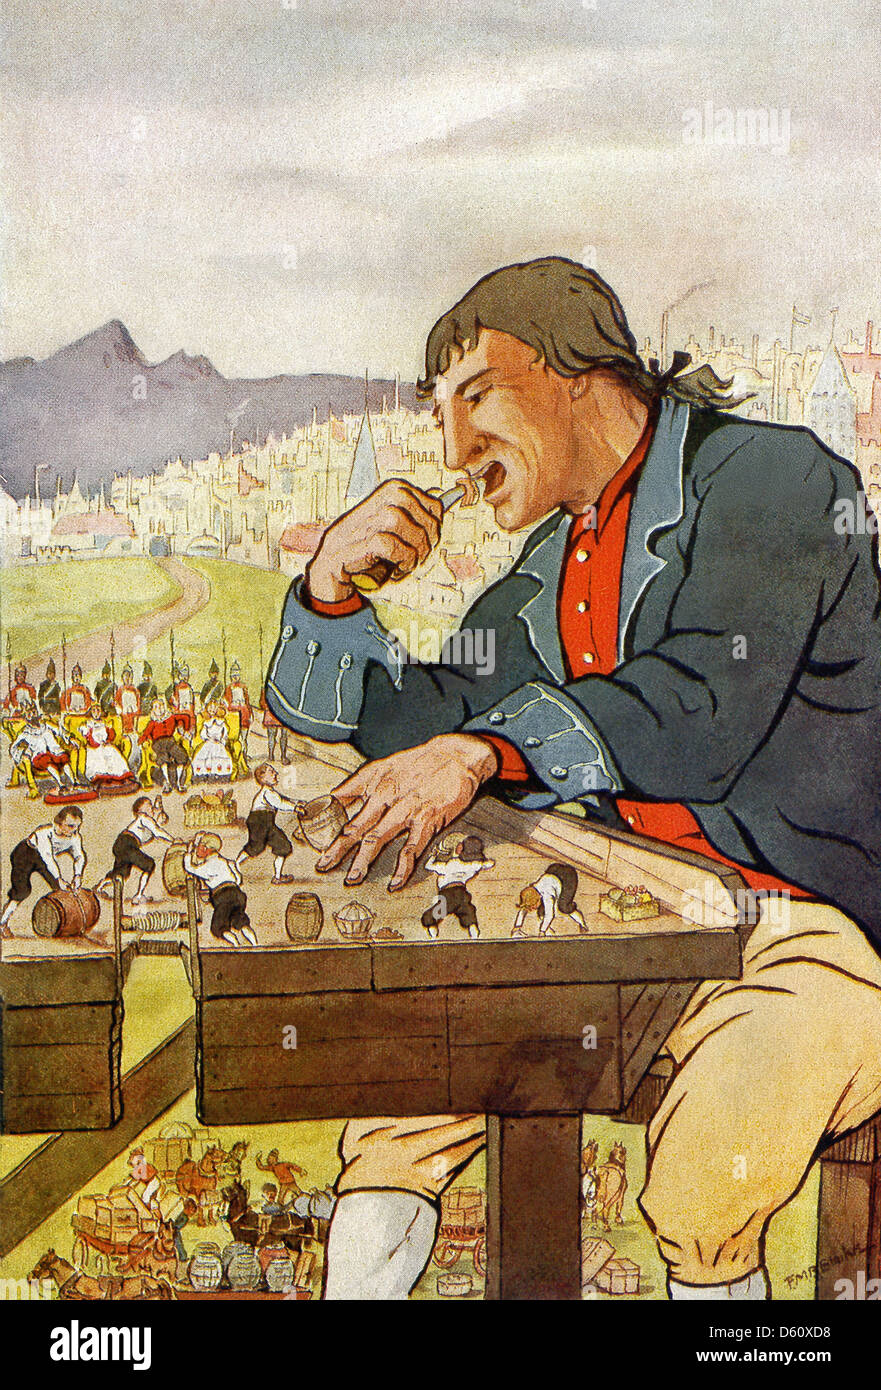 Gulliver wird von den Menschen in Lilliput Essen gegeben. Stockfoto